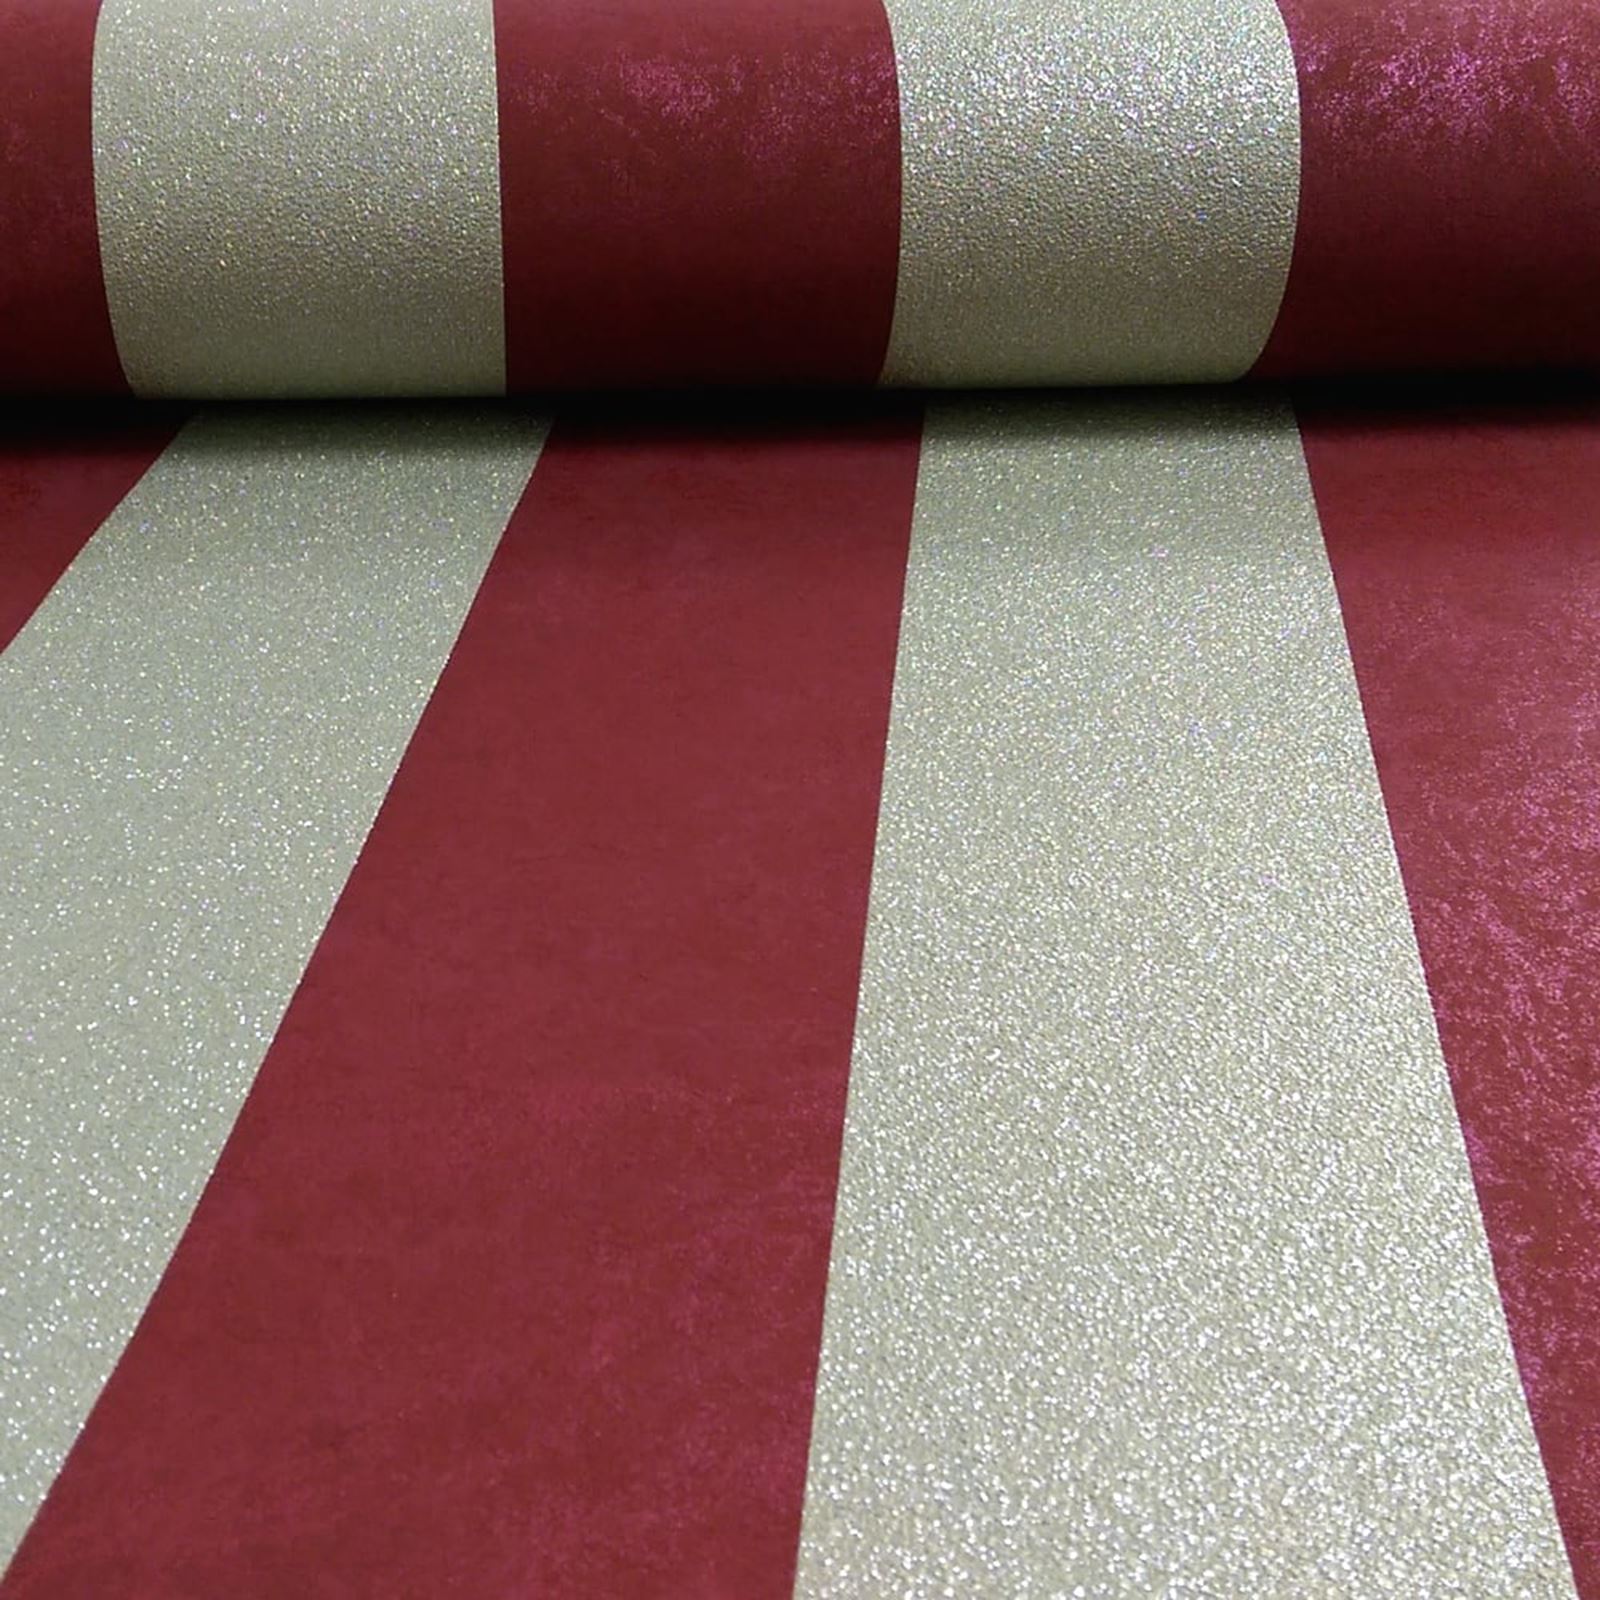 P Amp S Quilates Brillo Stripe Wallpaper Cobre Plata - Burgundy & Cream Striped - HD Wallpaper 